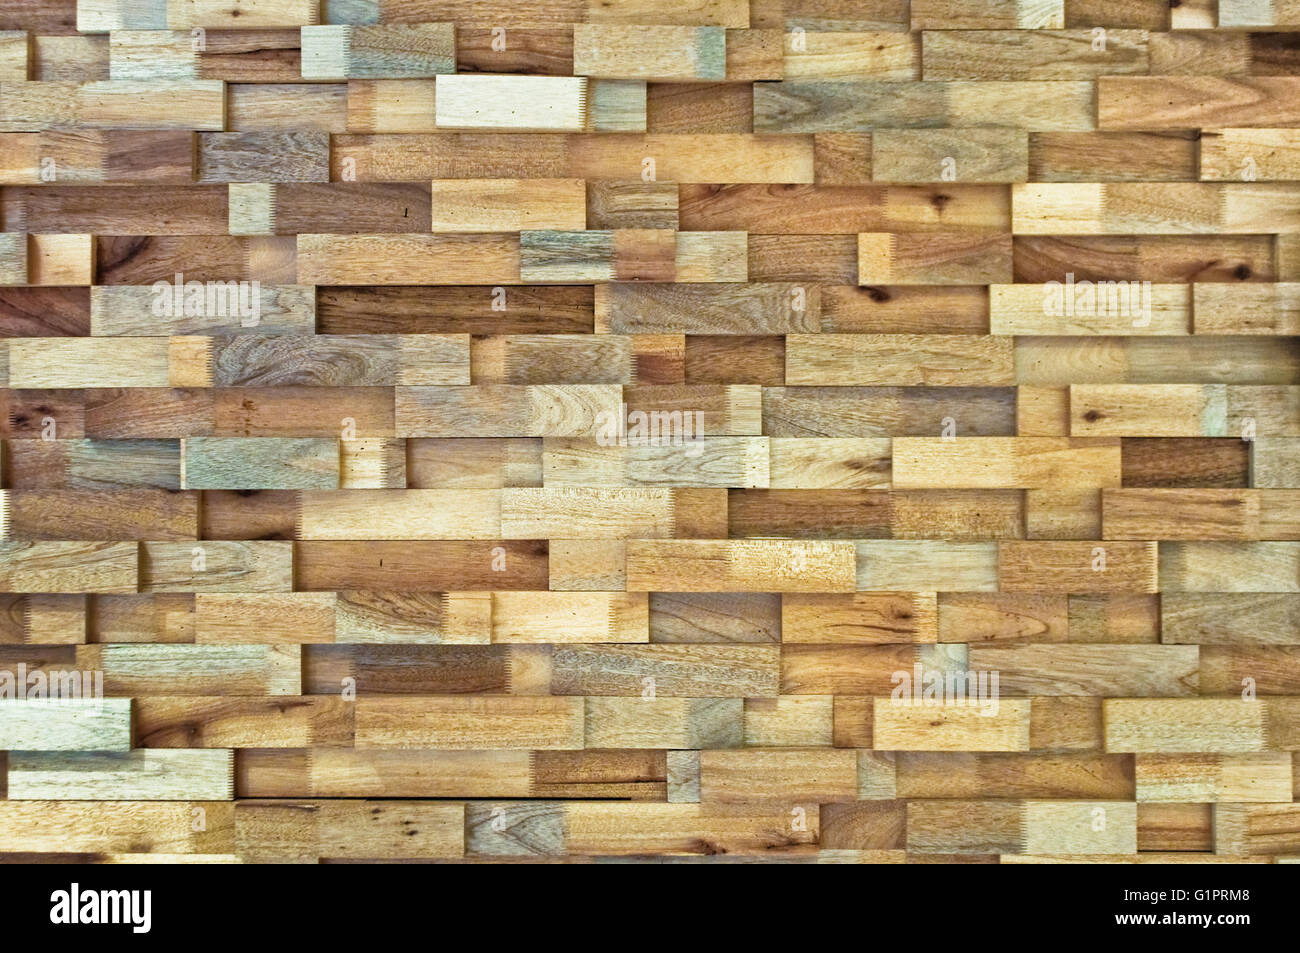 Nền gỗ cắt vân và nội thất gỗ làm tăng thêm sự sang trọng và tinh tế cho không gian sống của bạn. Với đặc tính tự nhiên và đẹp mắt, nó là lựa chọn hoàn hảo cho những người yêu thích phong cách trang trí tự nhiên. Hãy cùng chiêm ngưỡng hình ảnh liên quan đến nền gỗ cắt vân và nội thất gỗ để cảm nhận sự đẹp mắt của nó.